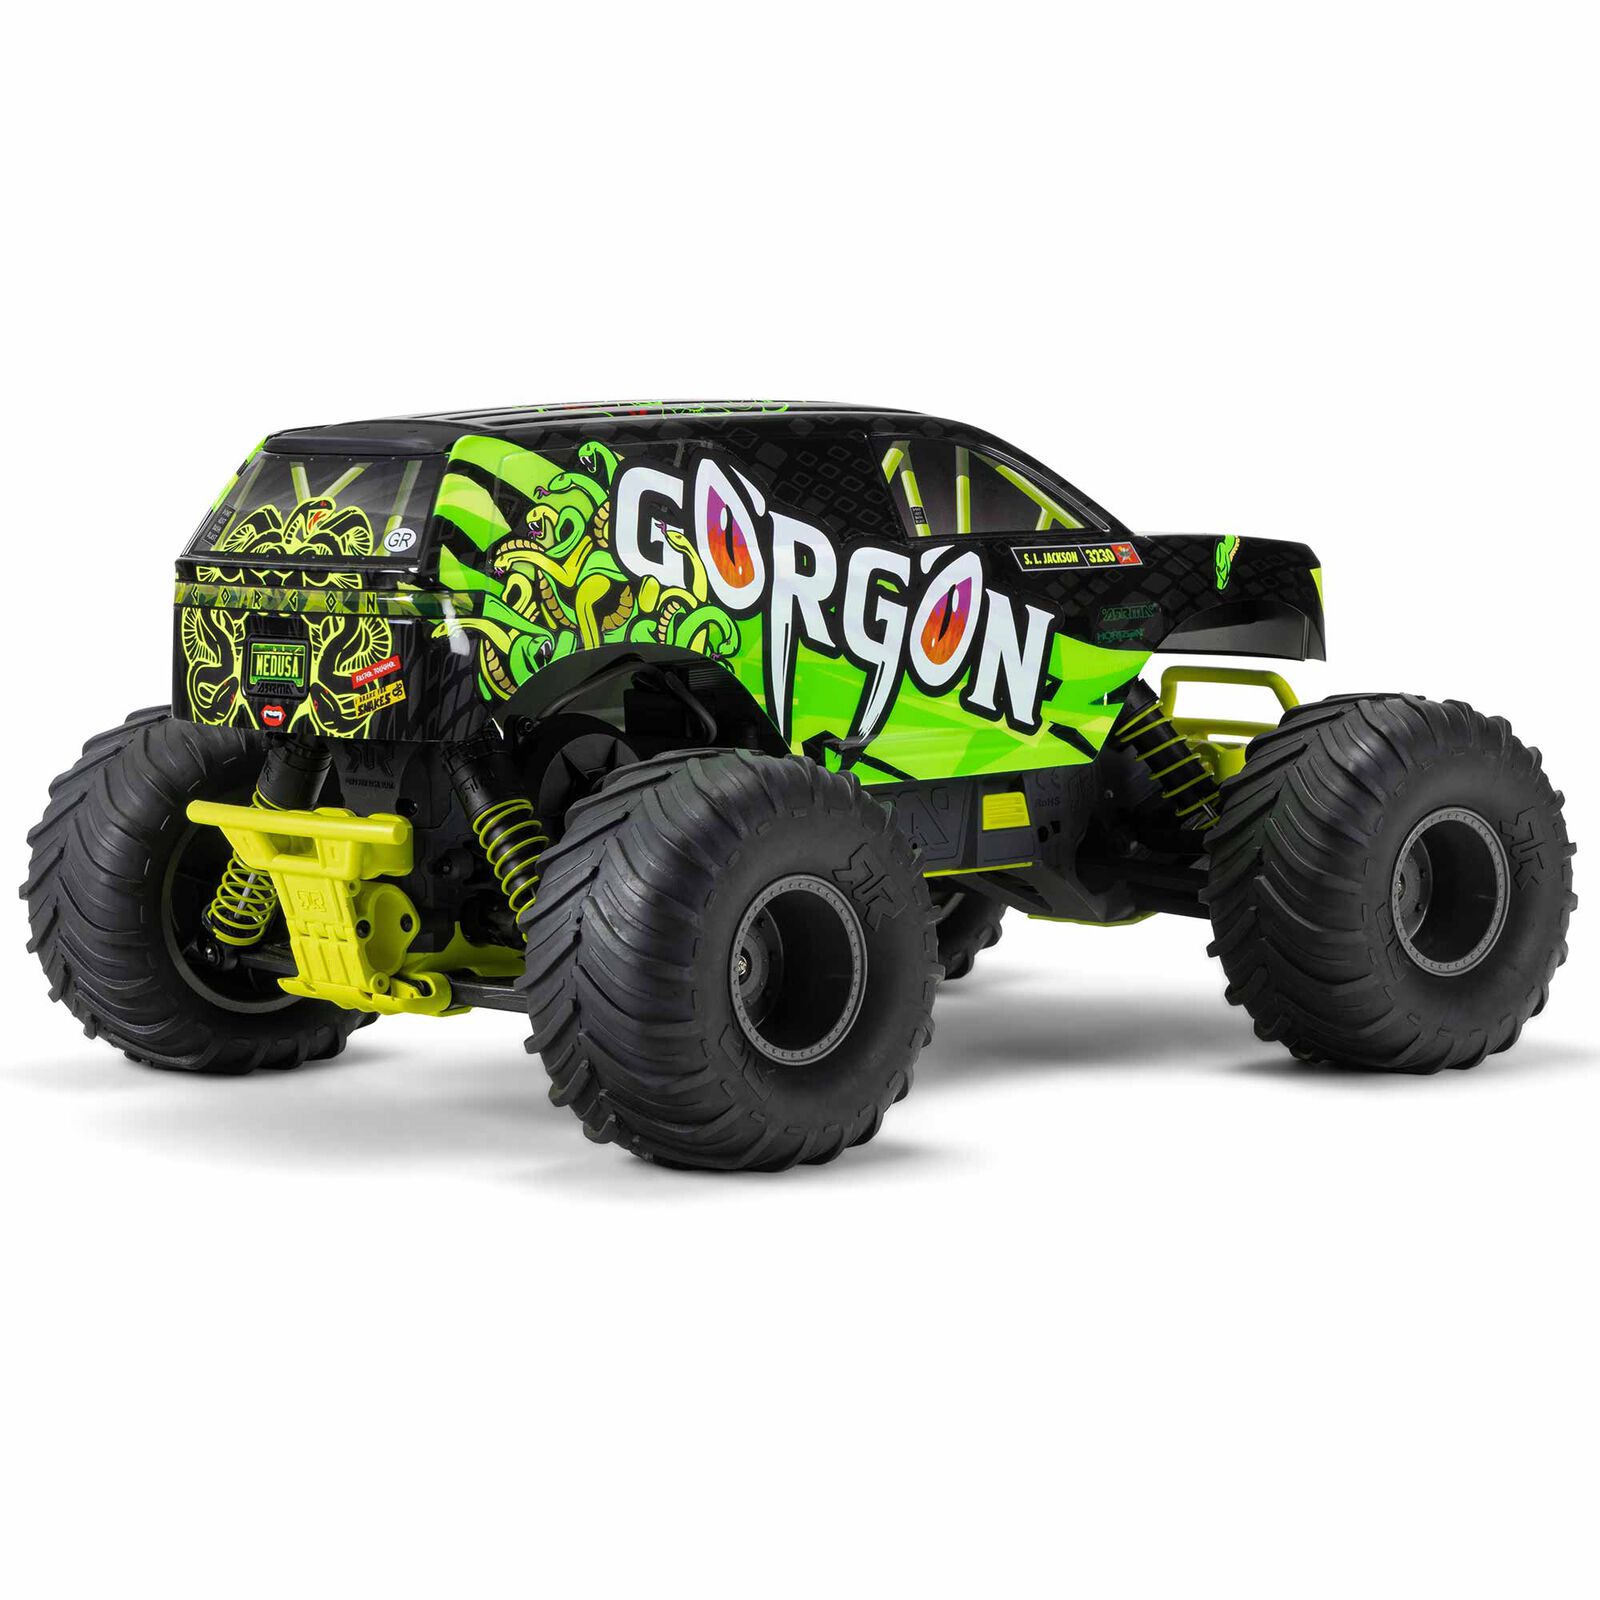 Arrma Gorgon 1/10-scale 2WD Monster Trucks